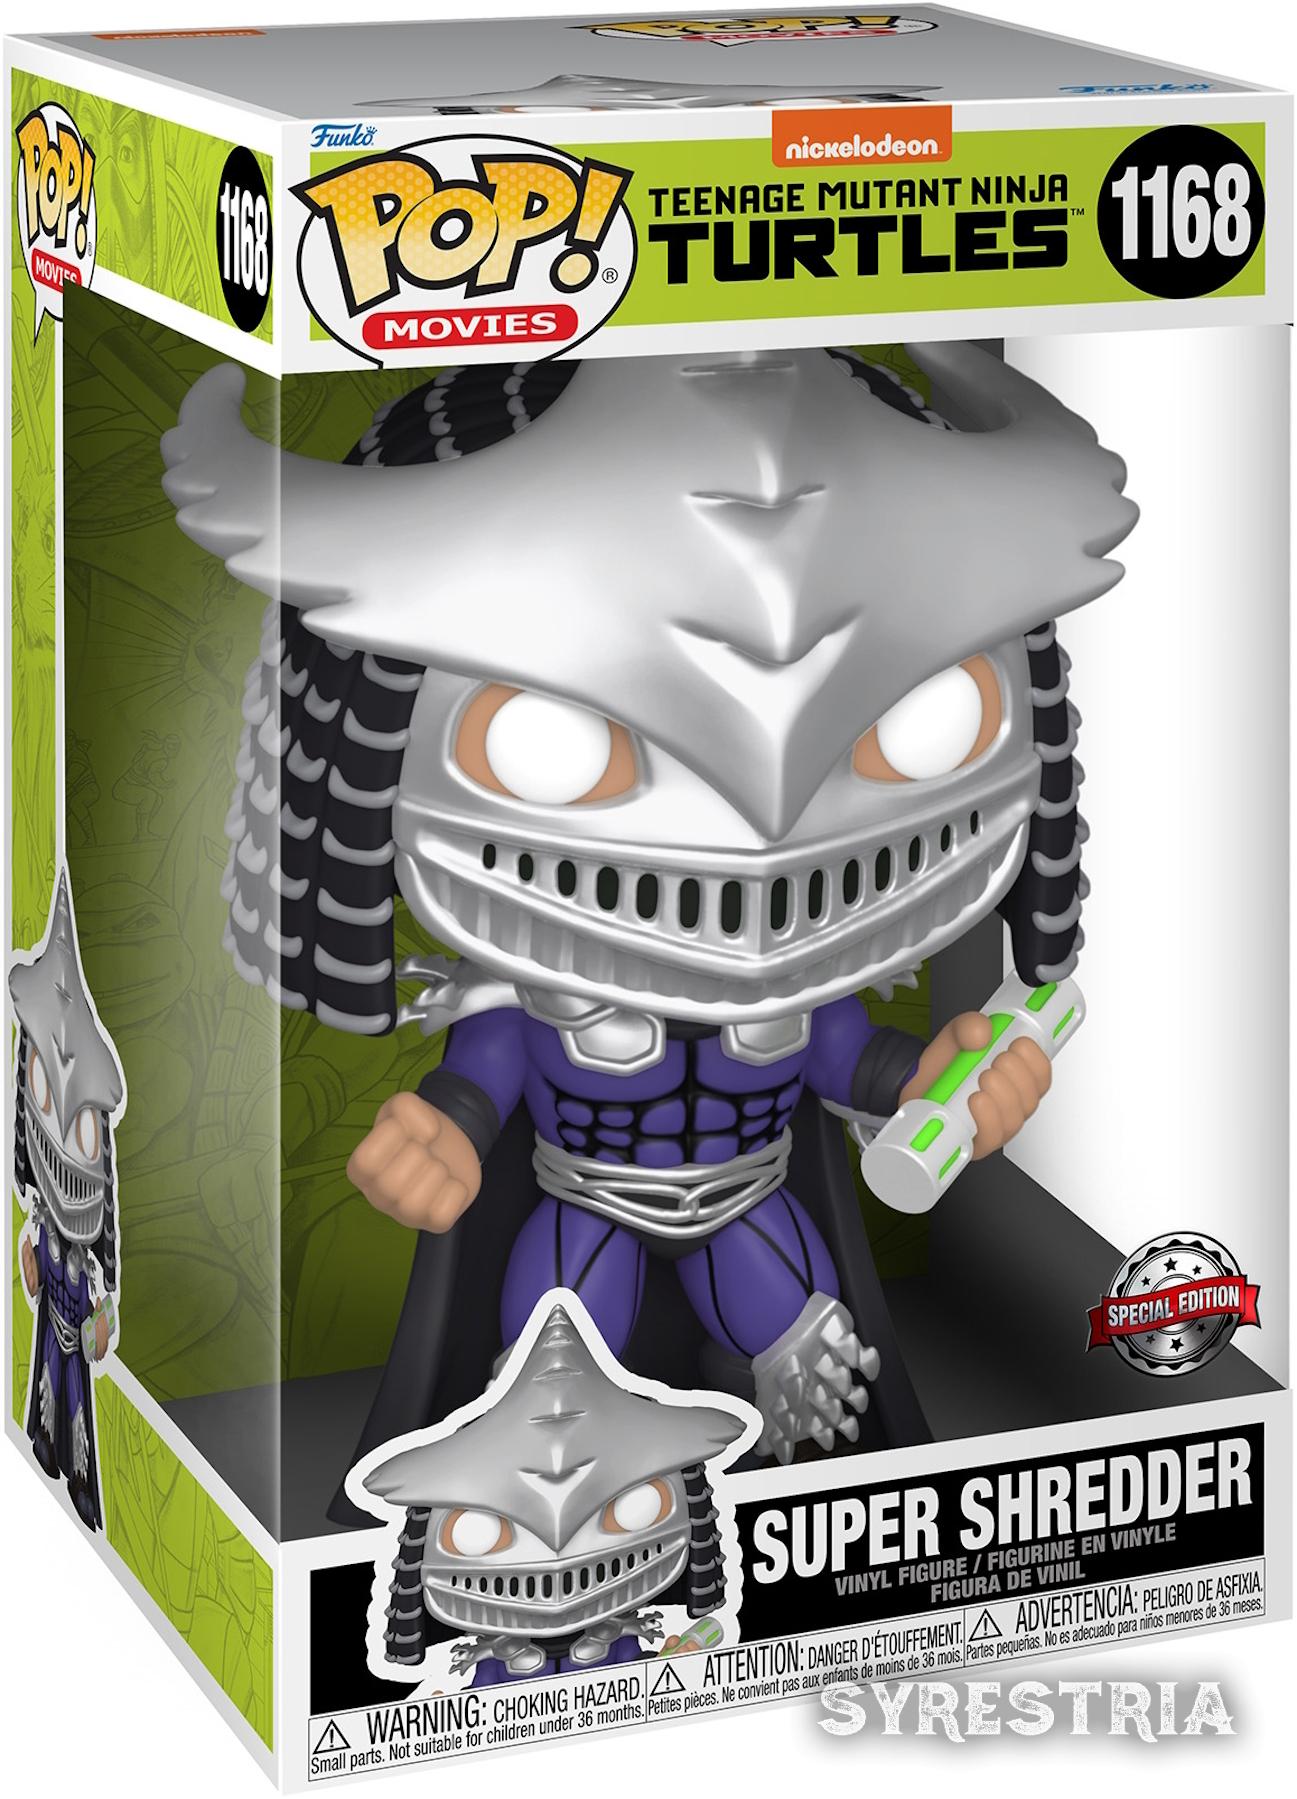 Teenage Mutant Ninja Turtles - Super Shredder 1168  Special Edtion - Funko Pop! Vinyl Figur